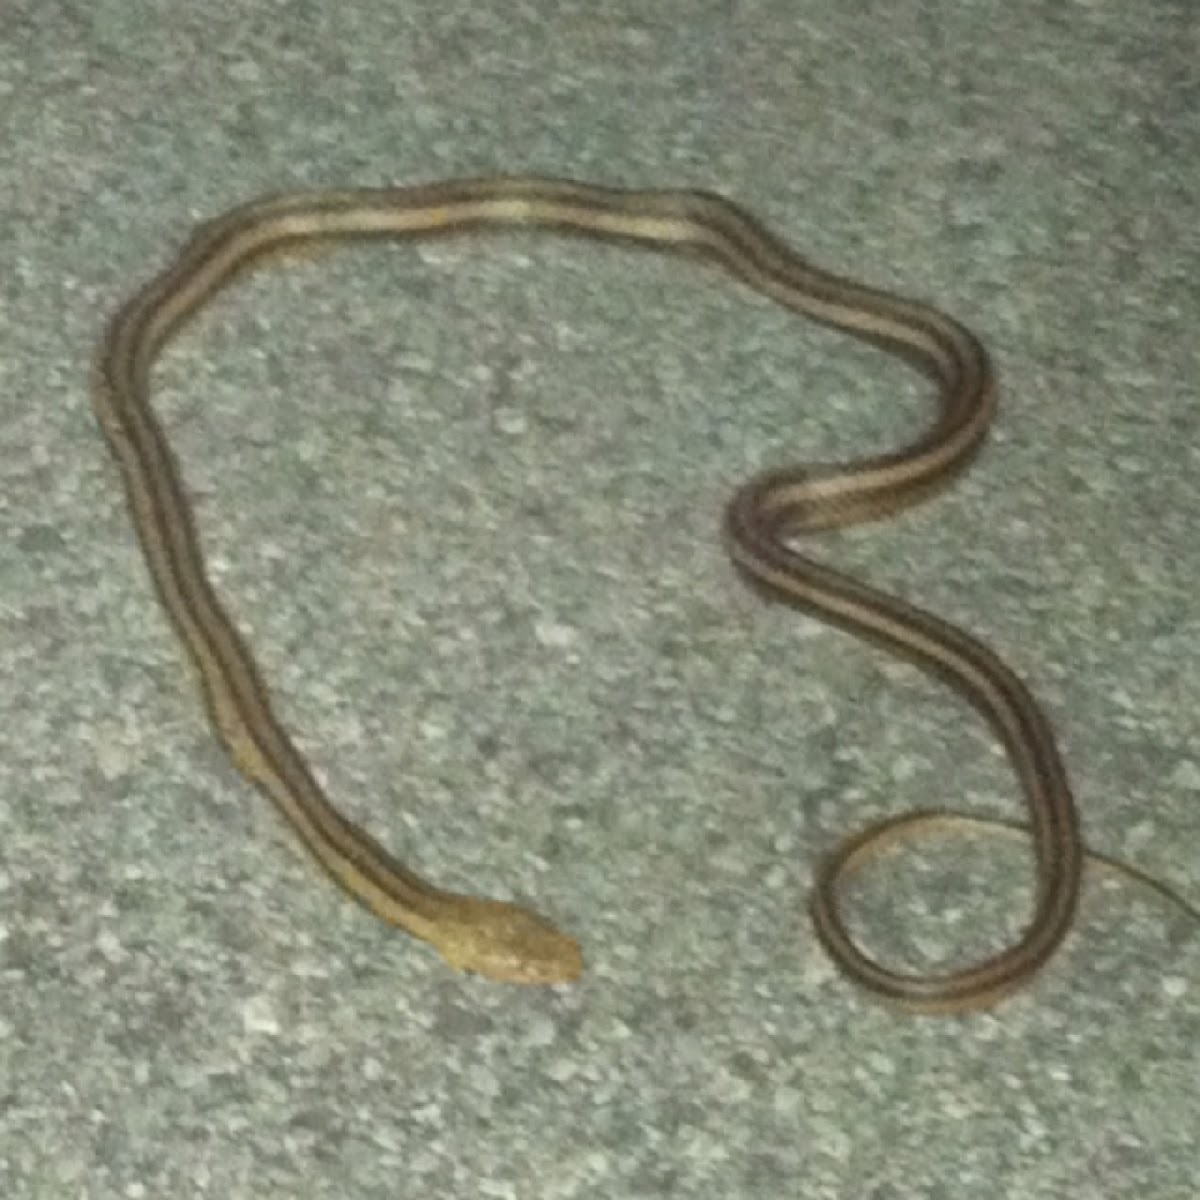 Yellow Rat snake